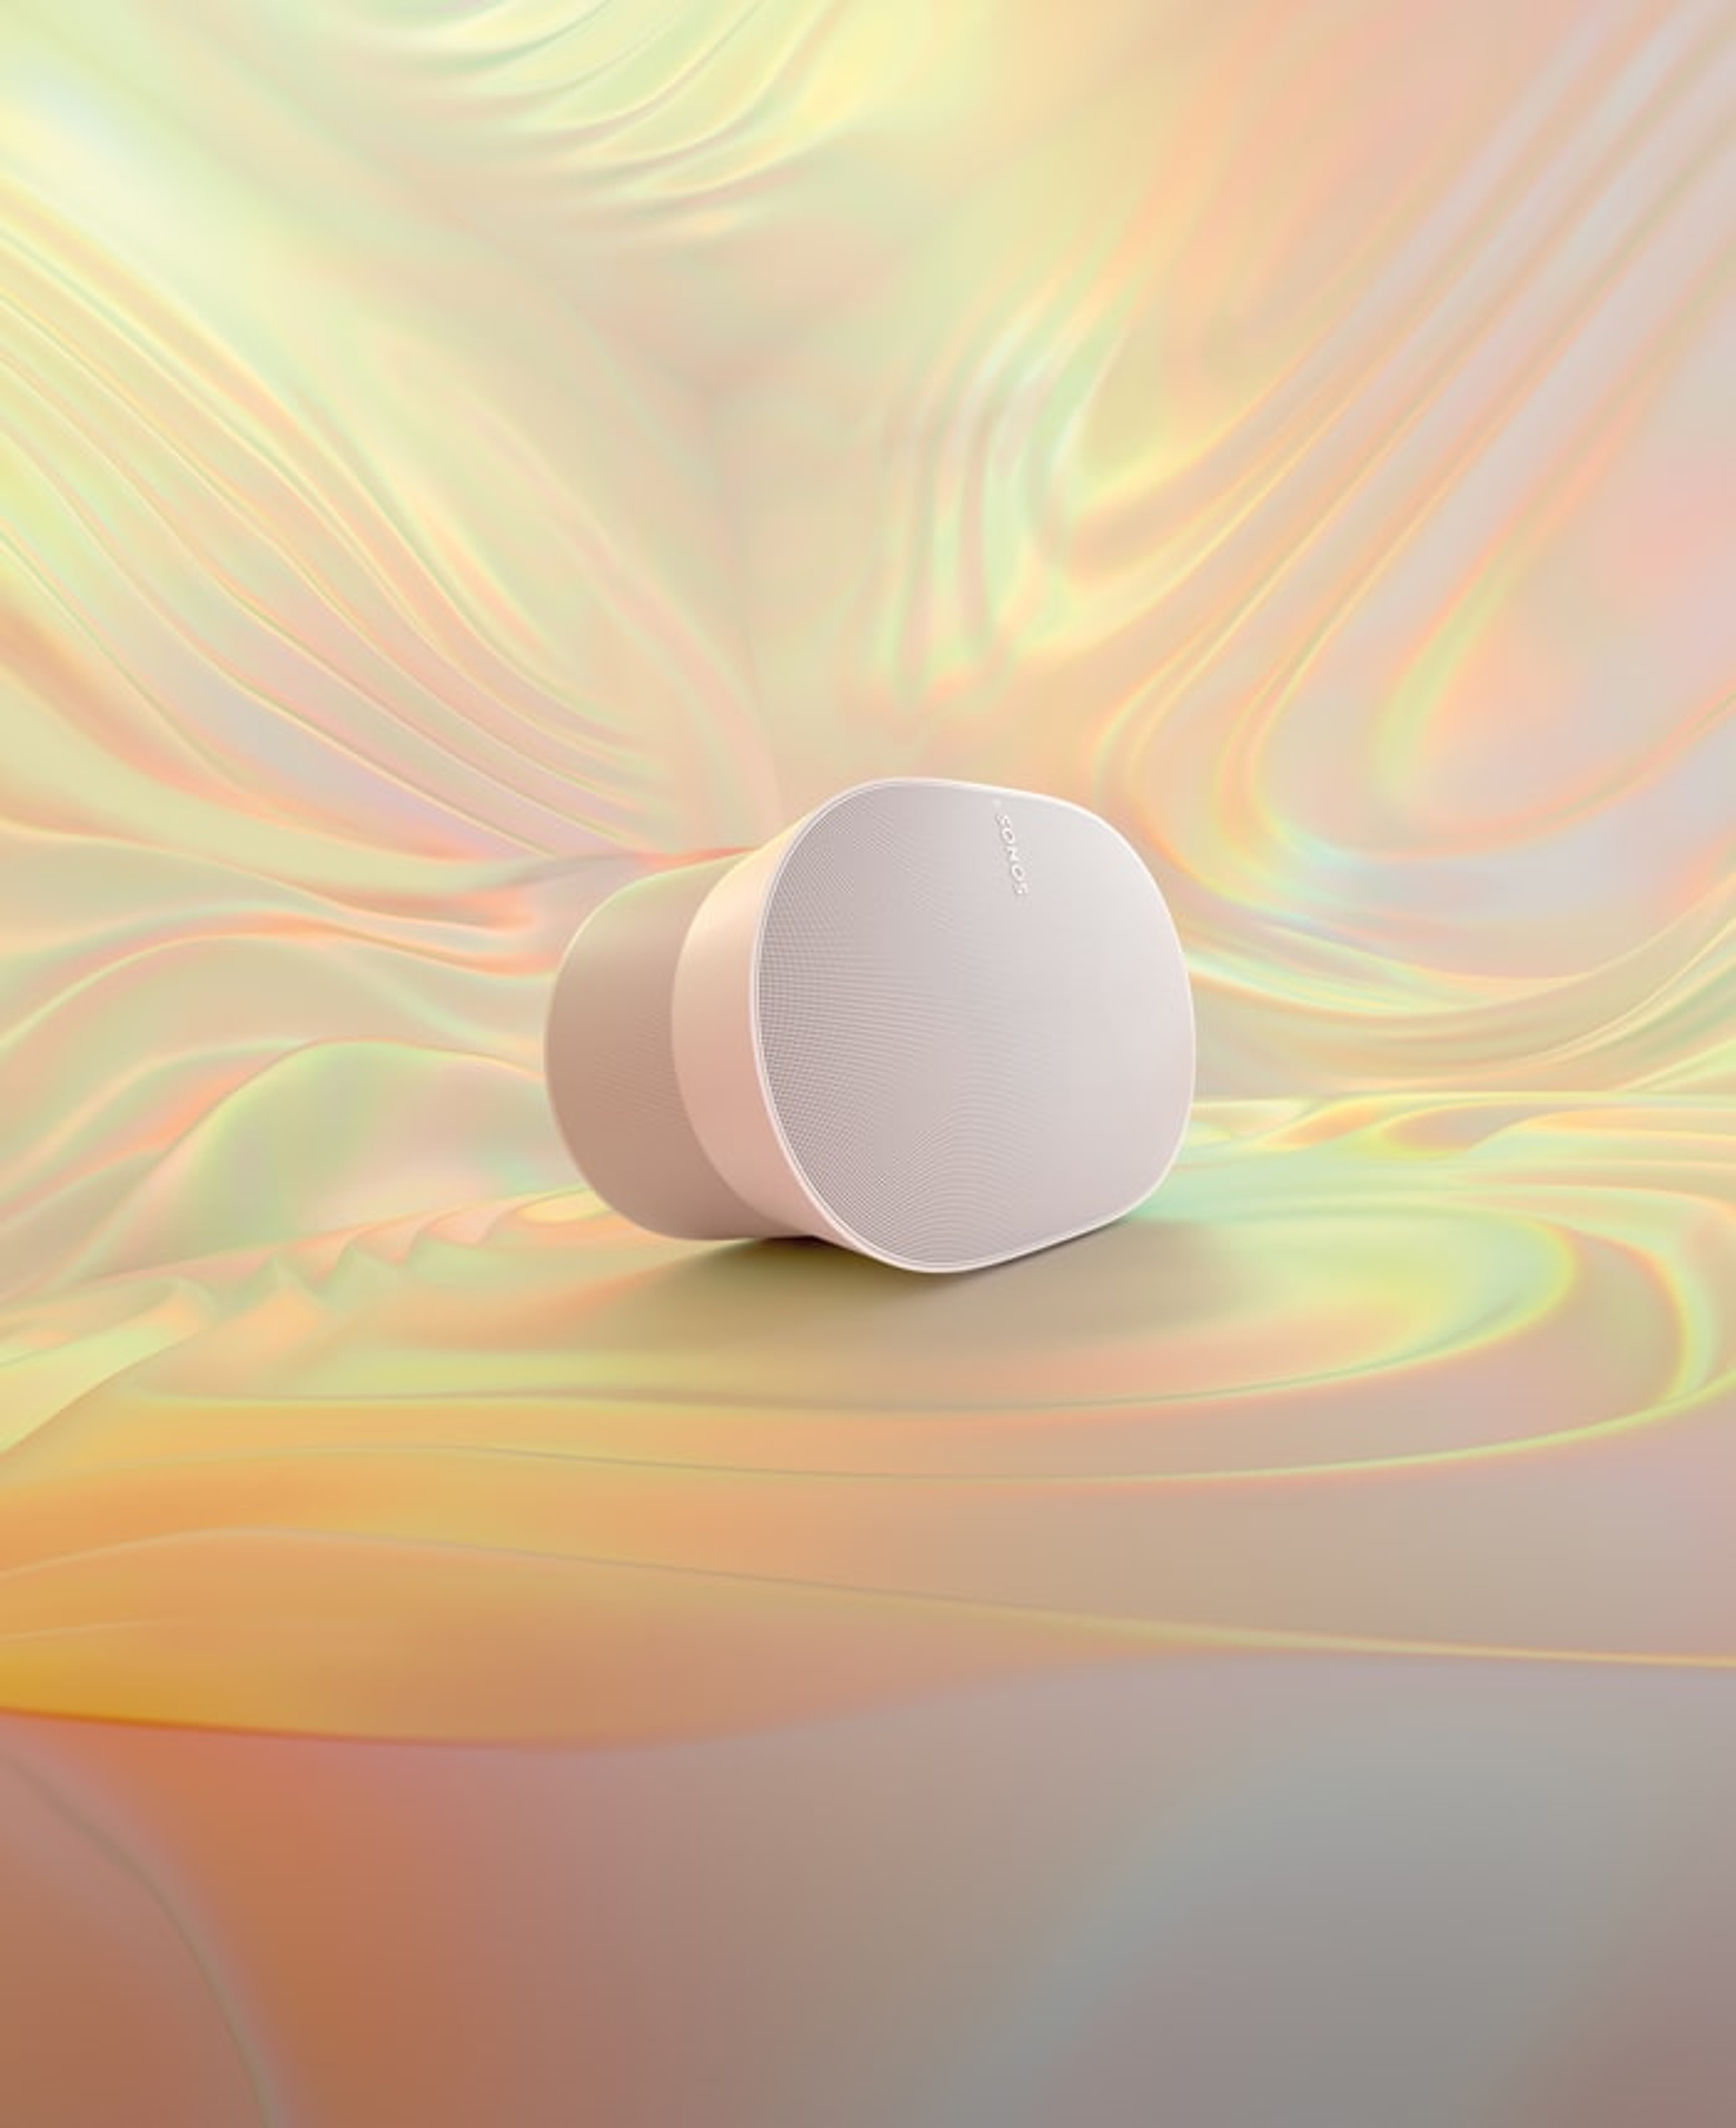 Ein Sonos Era 300 in Weiß vor einem mehrfarbigen Hintergrund mit Farbverlauf